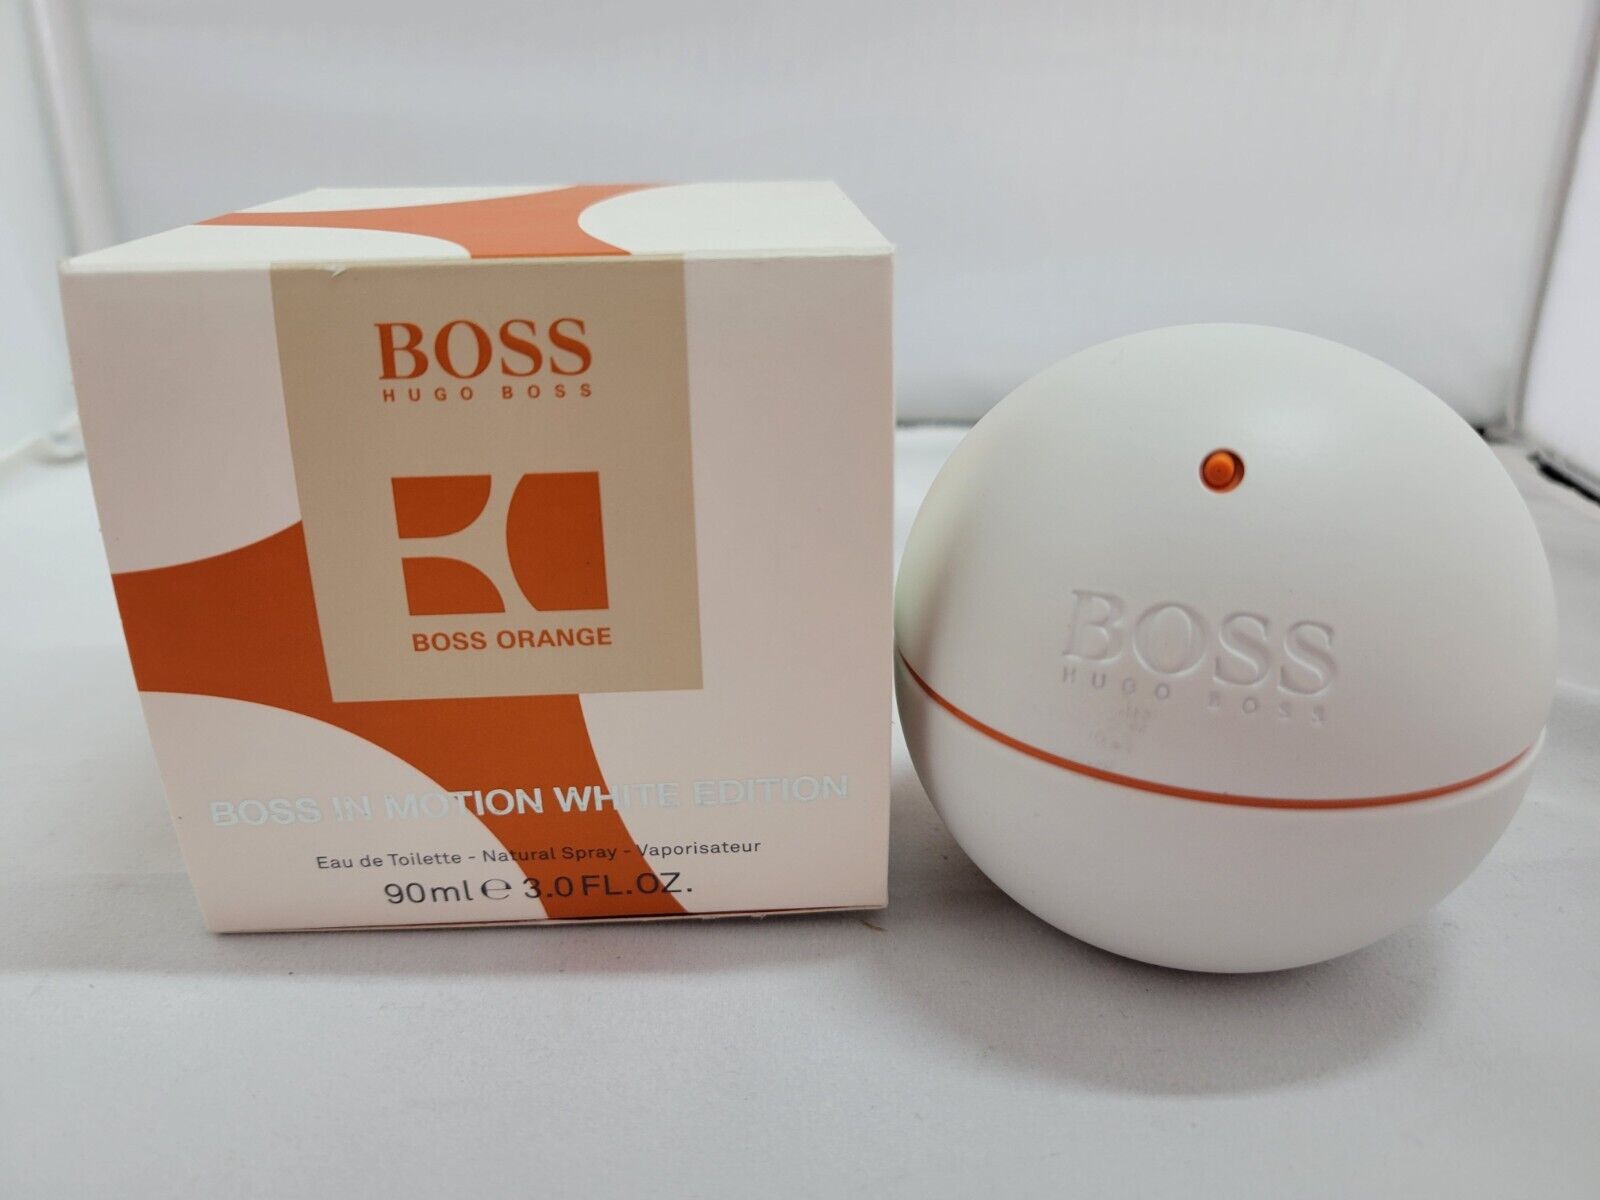 Hugo Boss in Motion White Edition Eau de toilette 90ml for Men